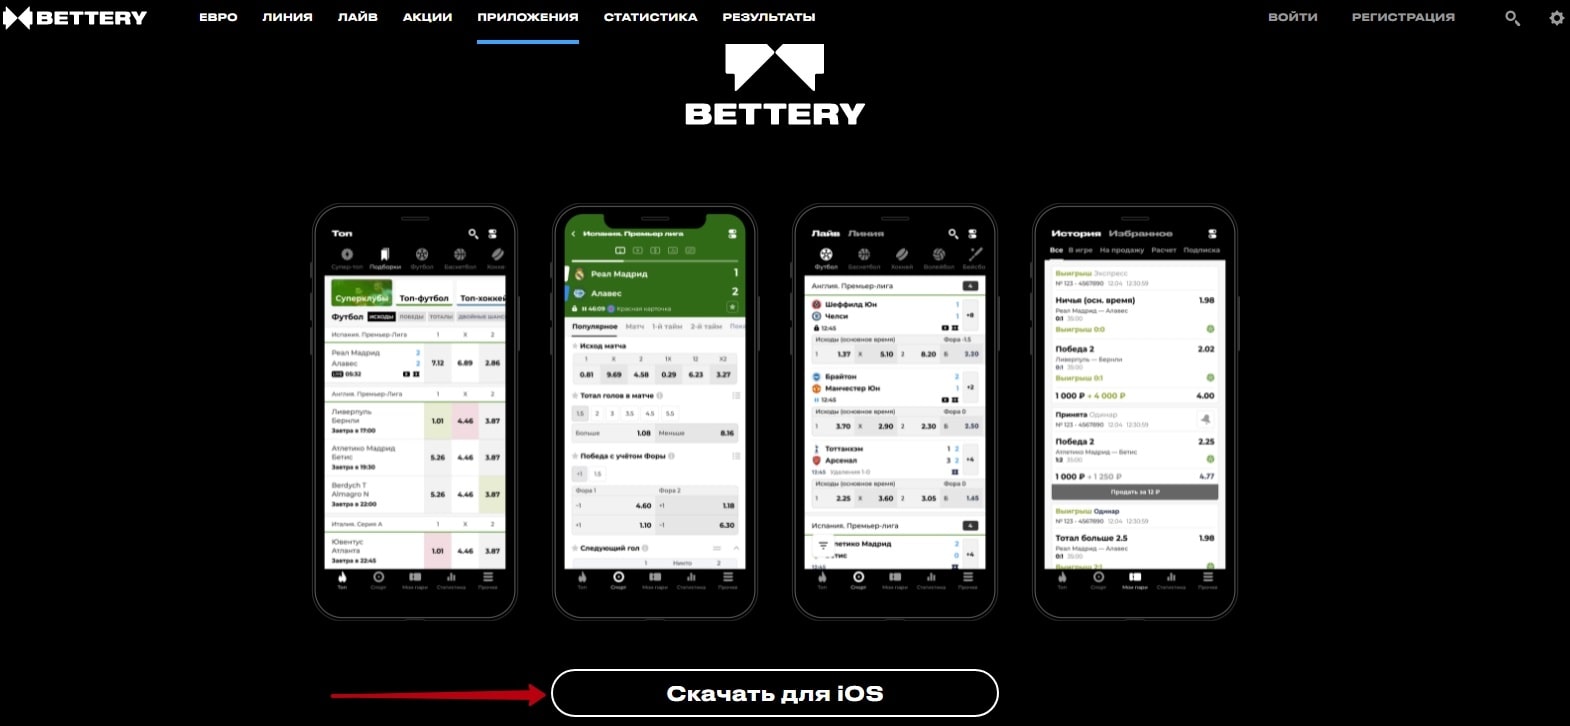 Как скачать приложение БК Bettery на iOS?